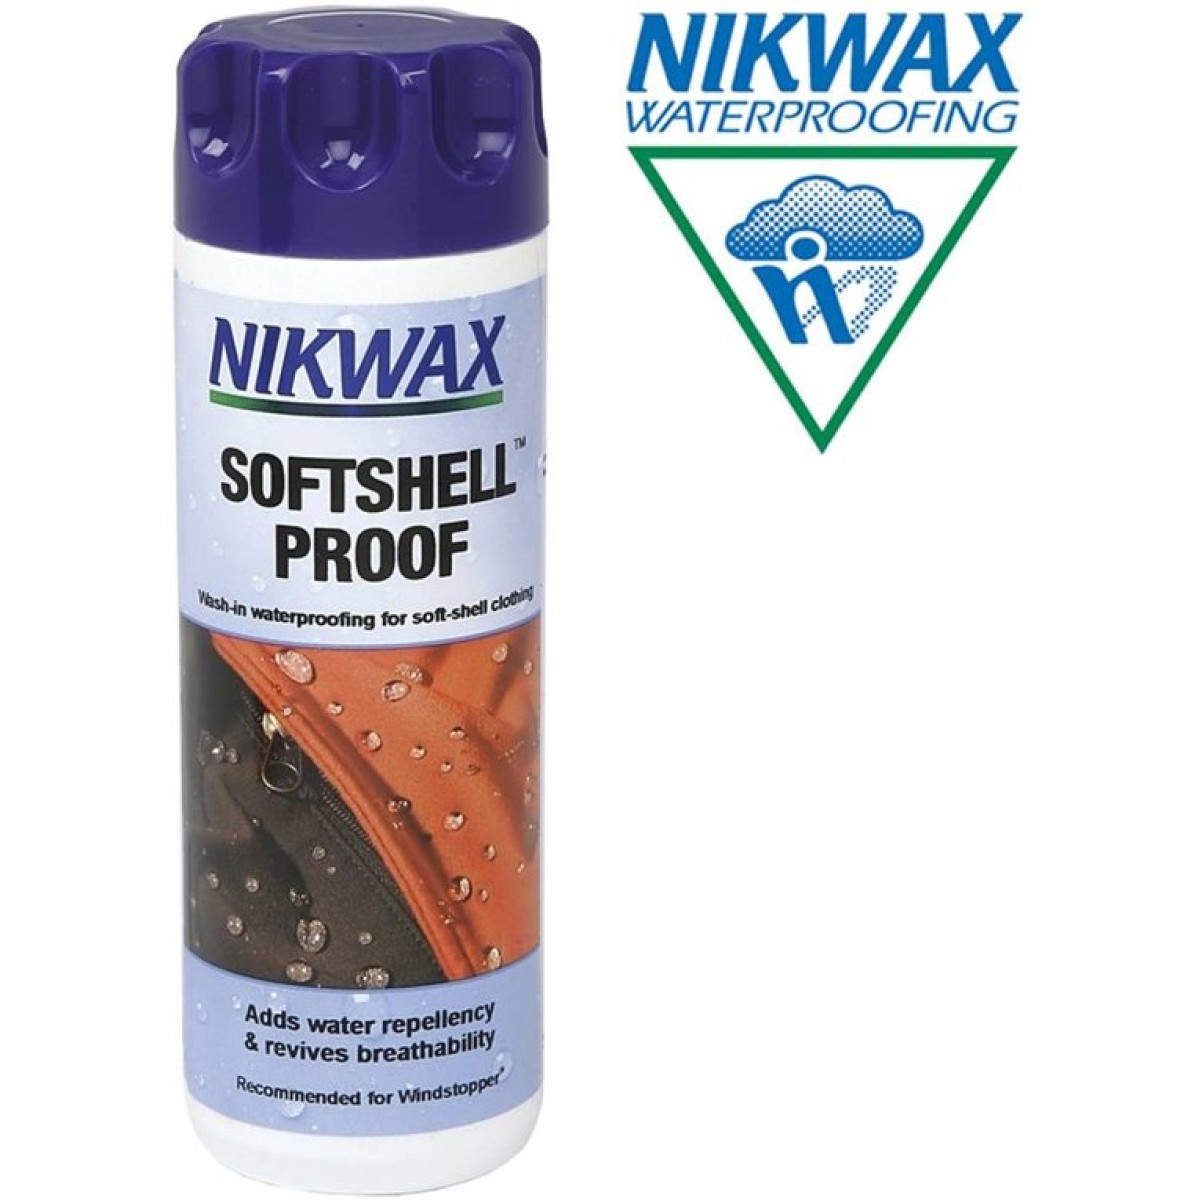 nikwax softshell proof wash-in